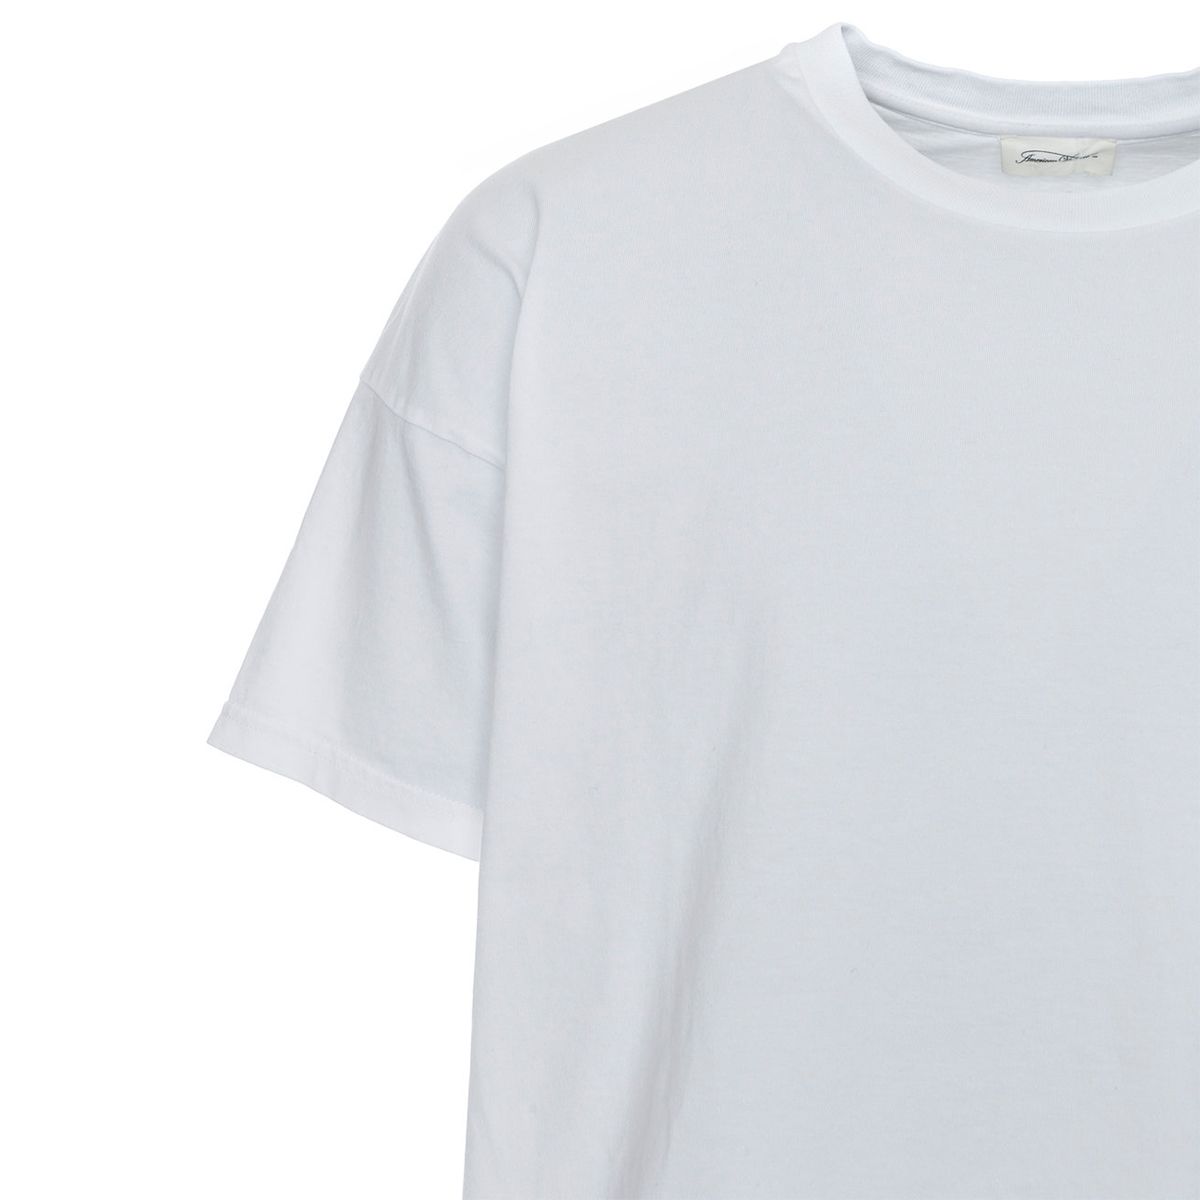 Fizvalley T-Shirt/White